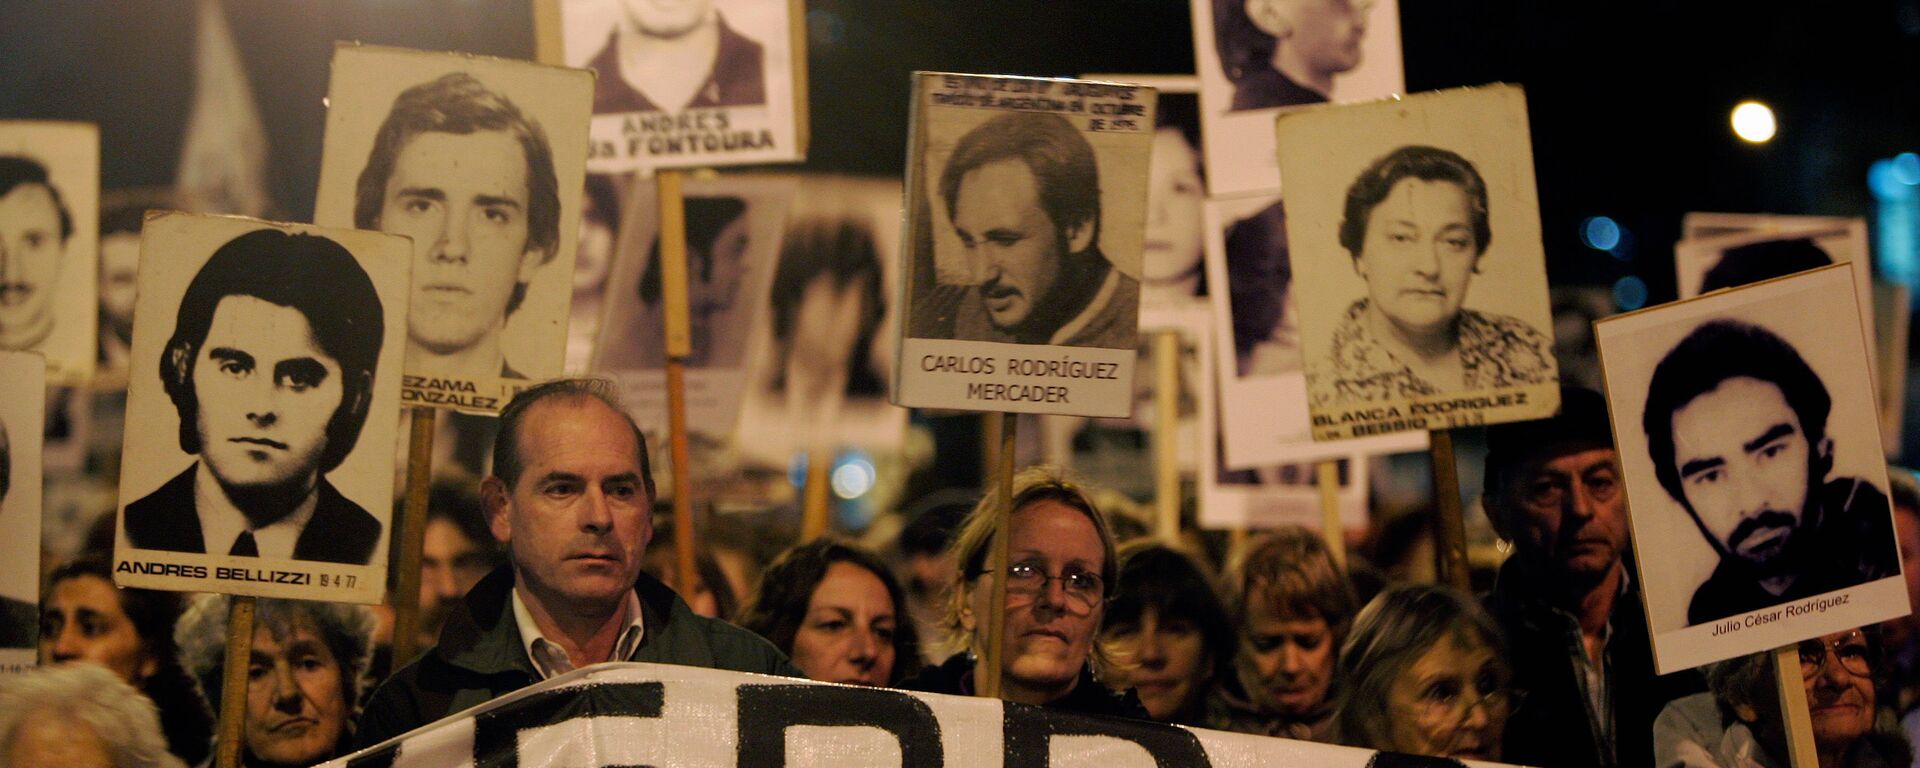 Marcha de Silencio en conmemoración de las víctimas de la dictadura de 1973-1985, 20 de mayo de 2088, Montevideo, Uruguay - Sputnik Mundo, 1920, 24.06.2021